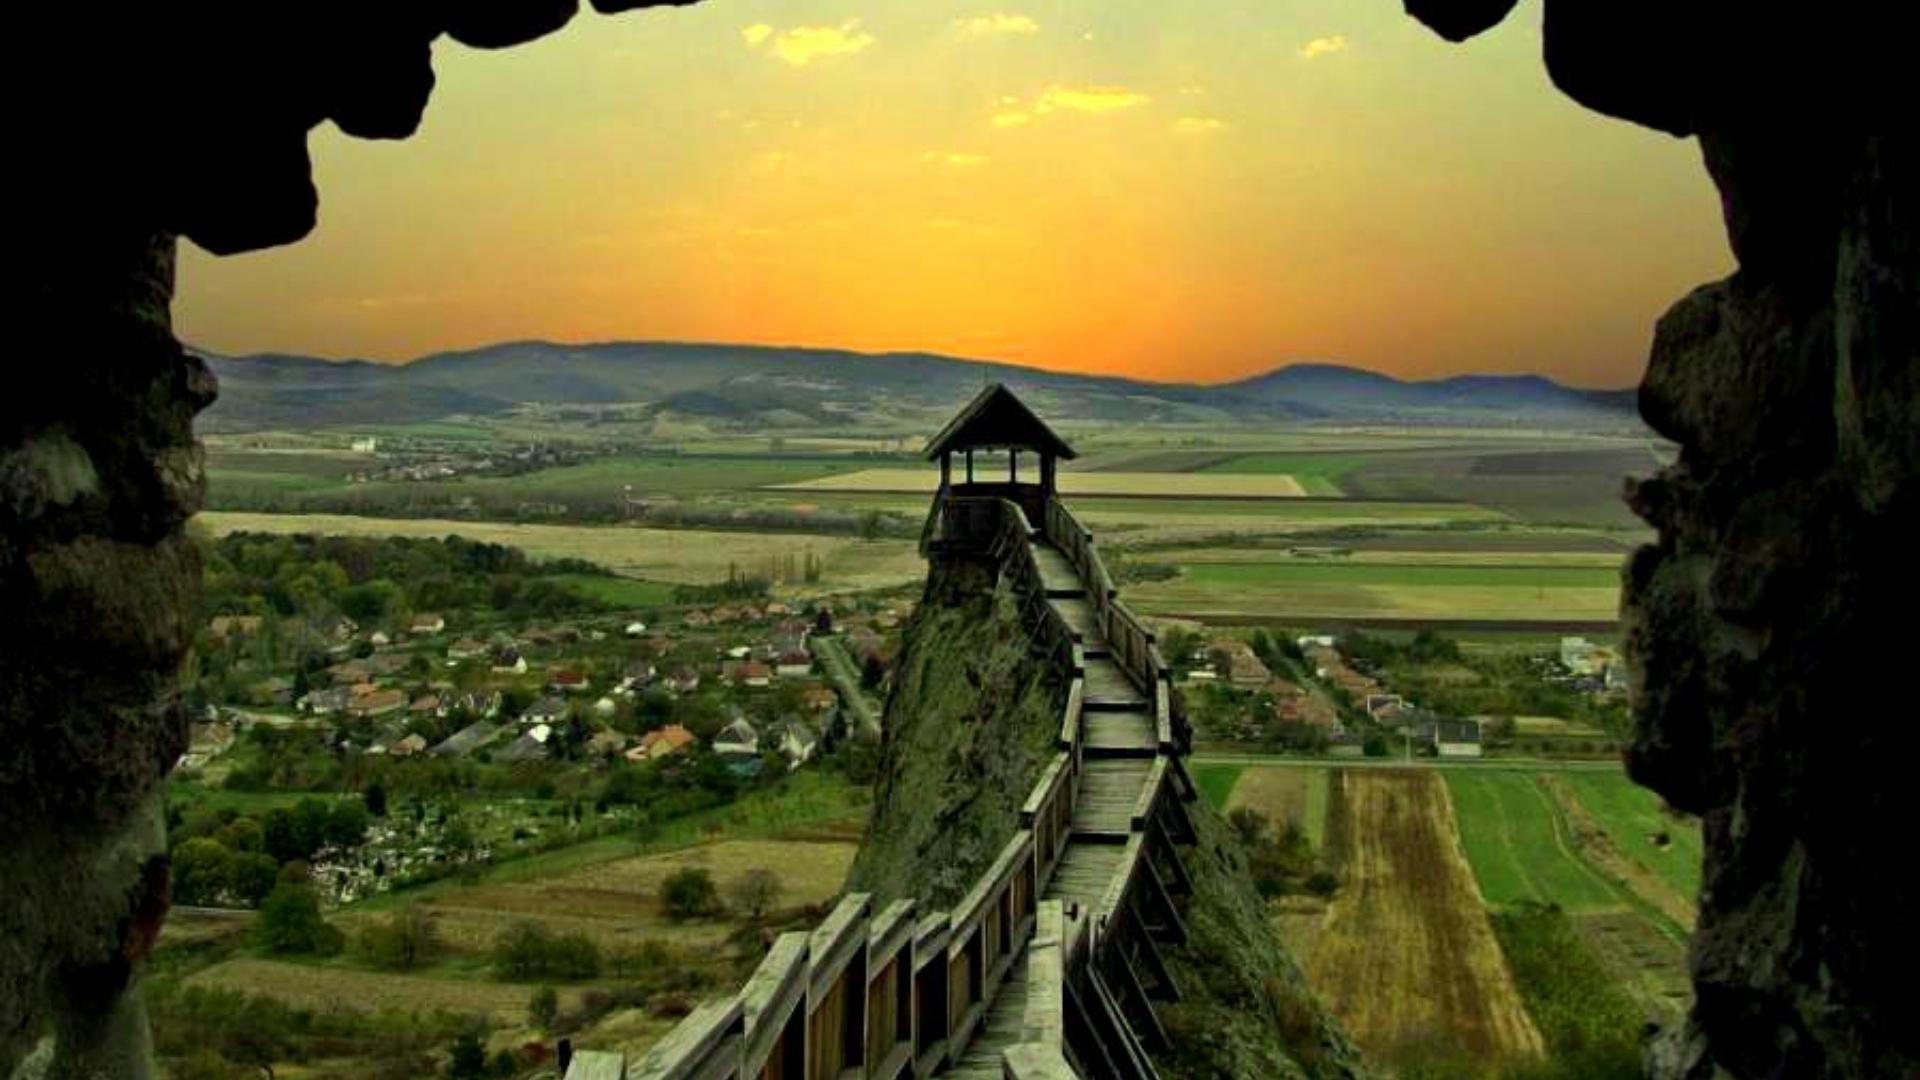 Скачать обои бесплатно Пейзаж, Венгрия, Башня, Строительство, Сделано Человеком картинка на рабочий стол ПК